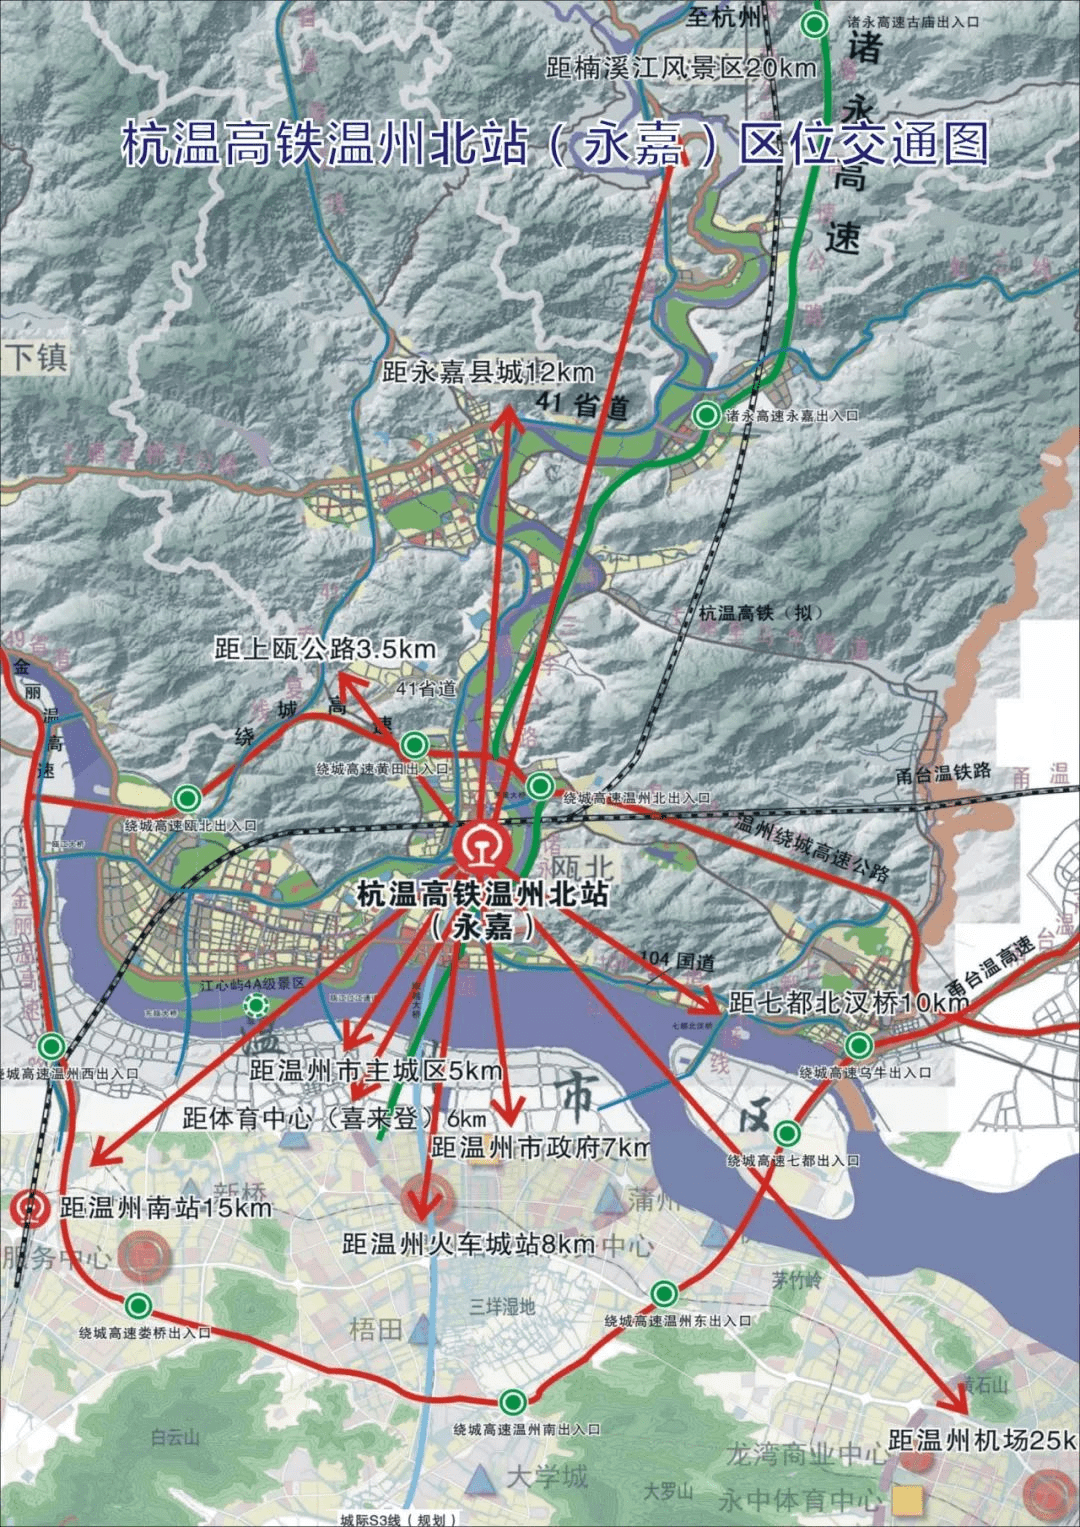 暂停业务期间,铁路局适当增加相应路线在乐清站和温州南站